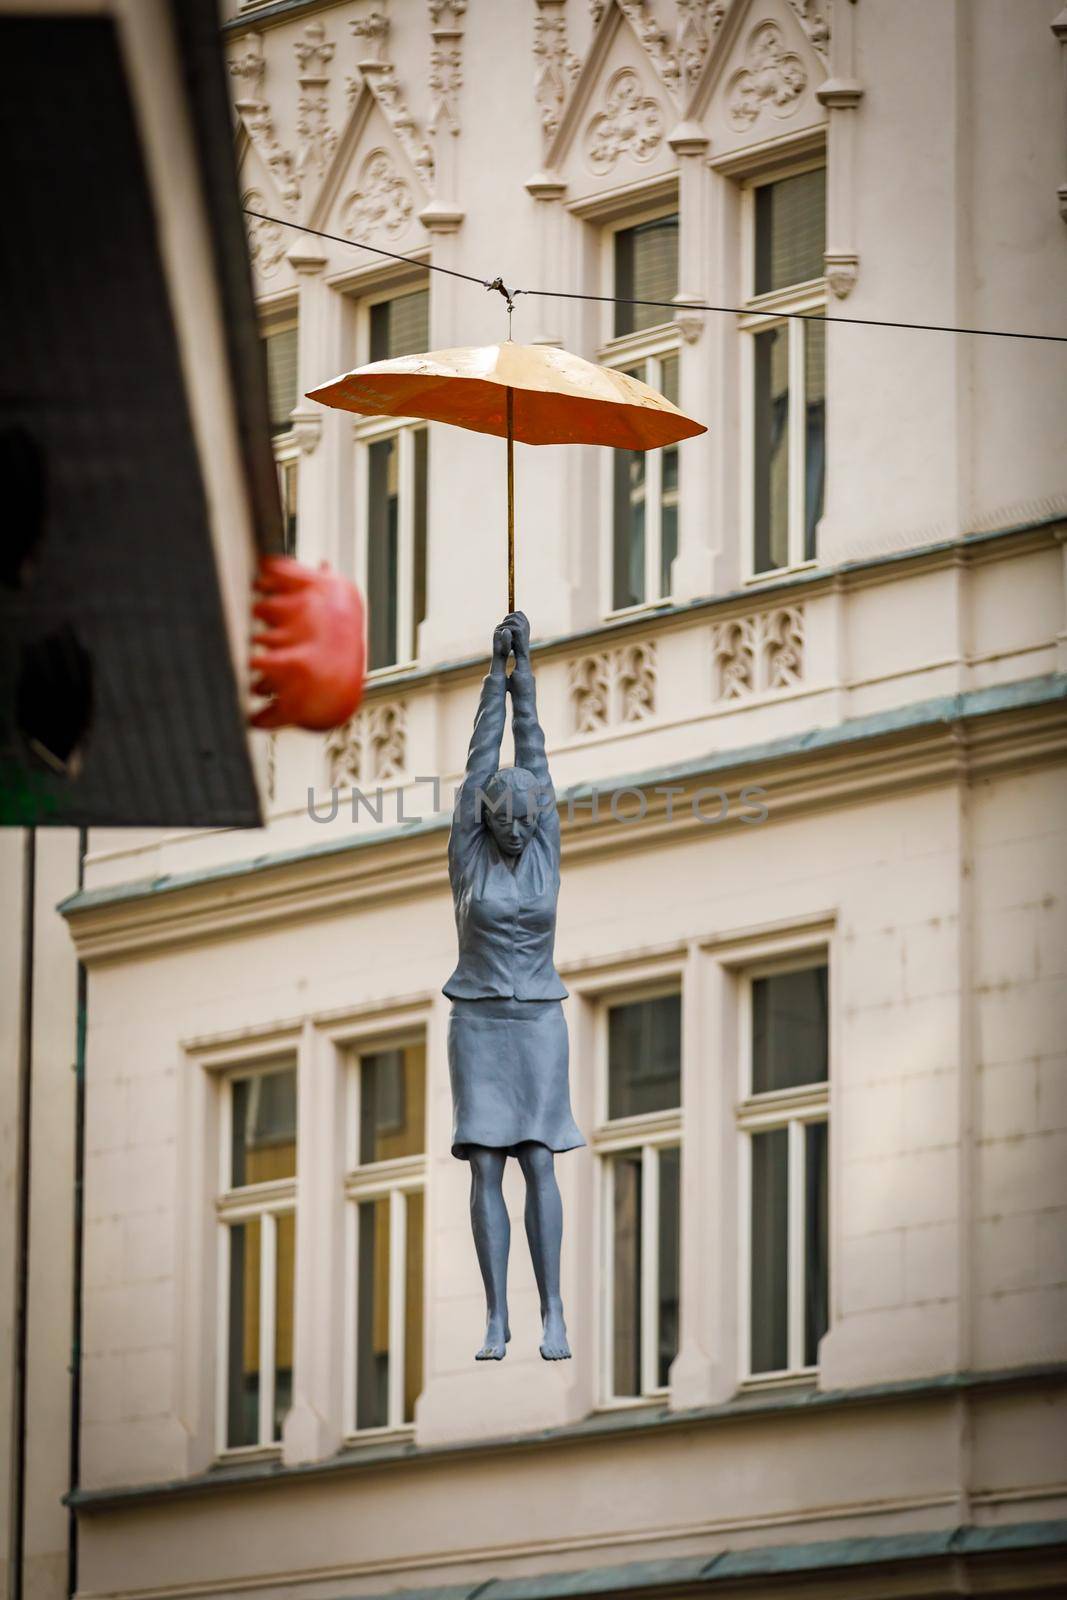 Prague, Czech Republic - April 14, 2018. Sculpture of a woman hanging from an umbrella in Prague. Local landmark